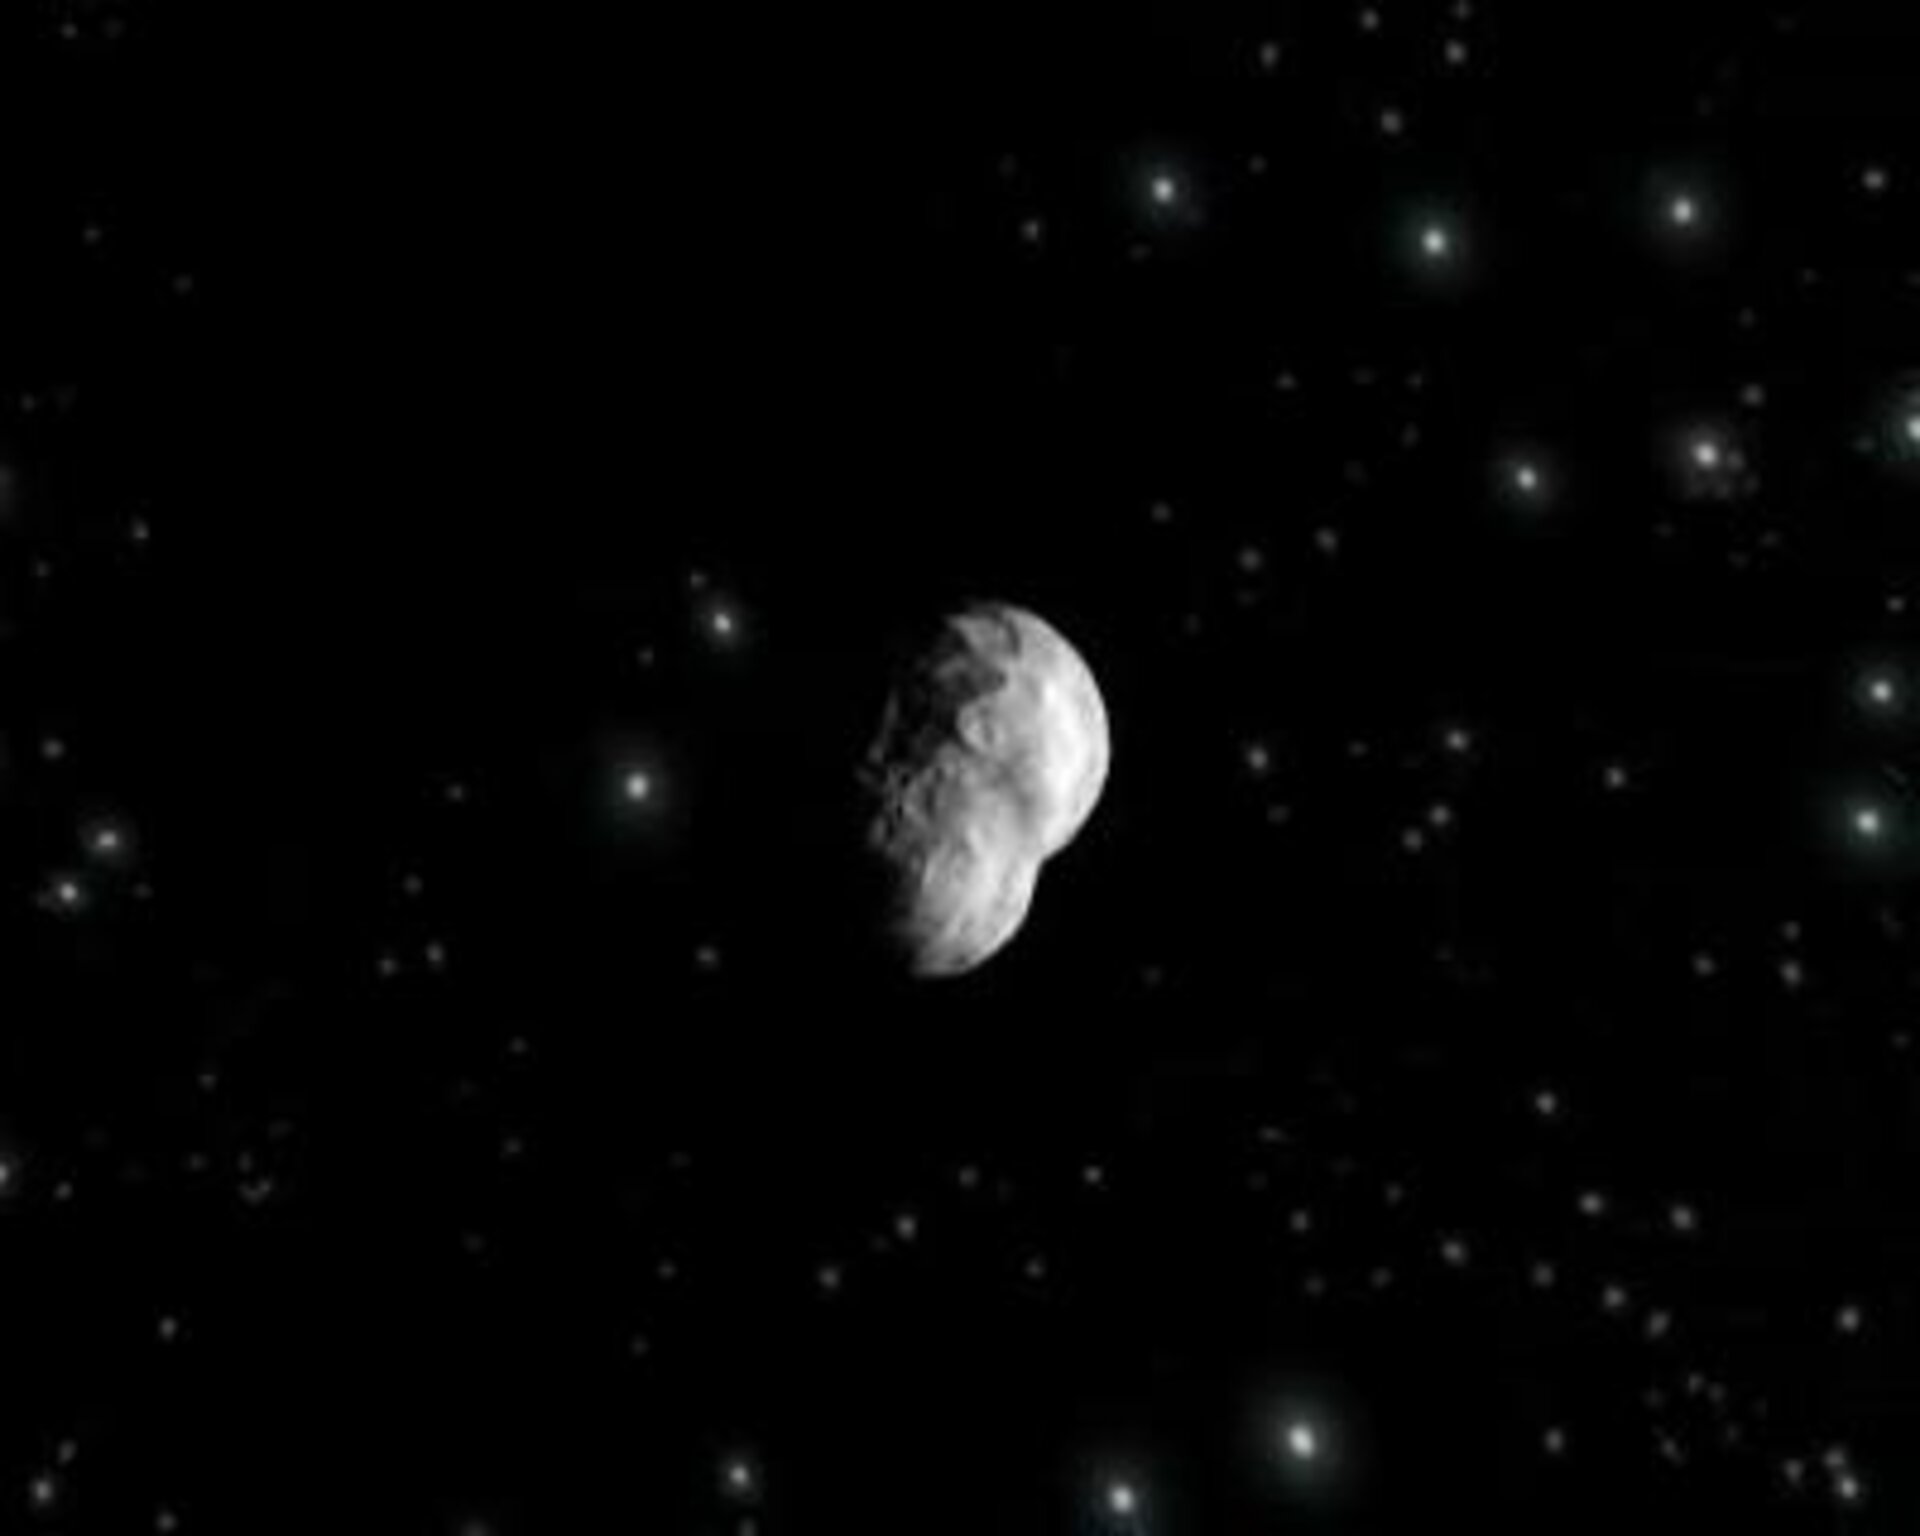 Impressie van planetoïde 2867 Steins, binnenkort weten we hoe het hemellichaam er precies uitziet